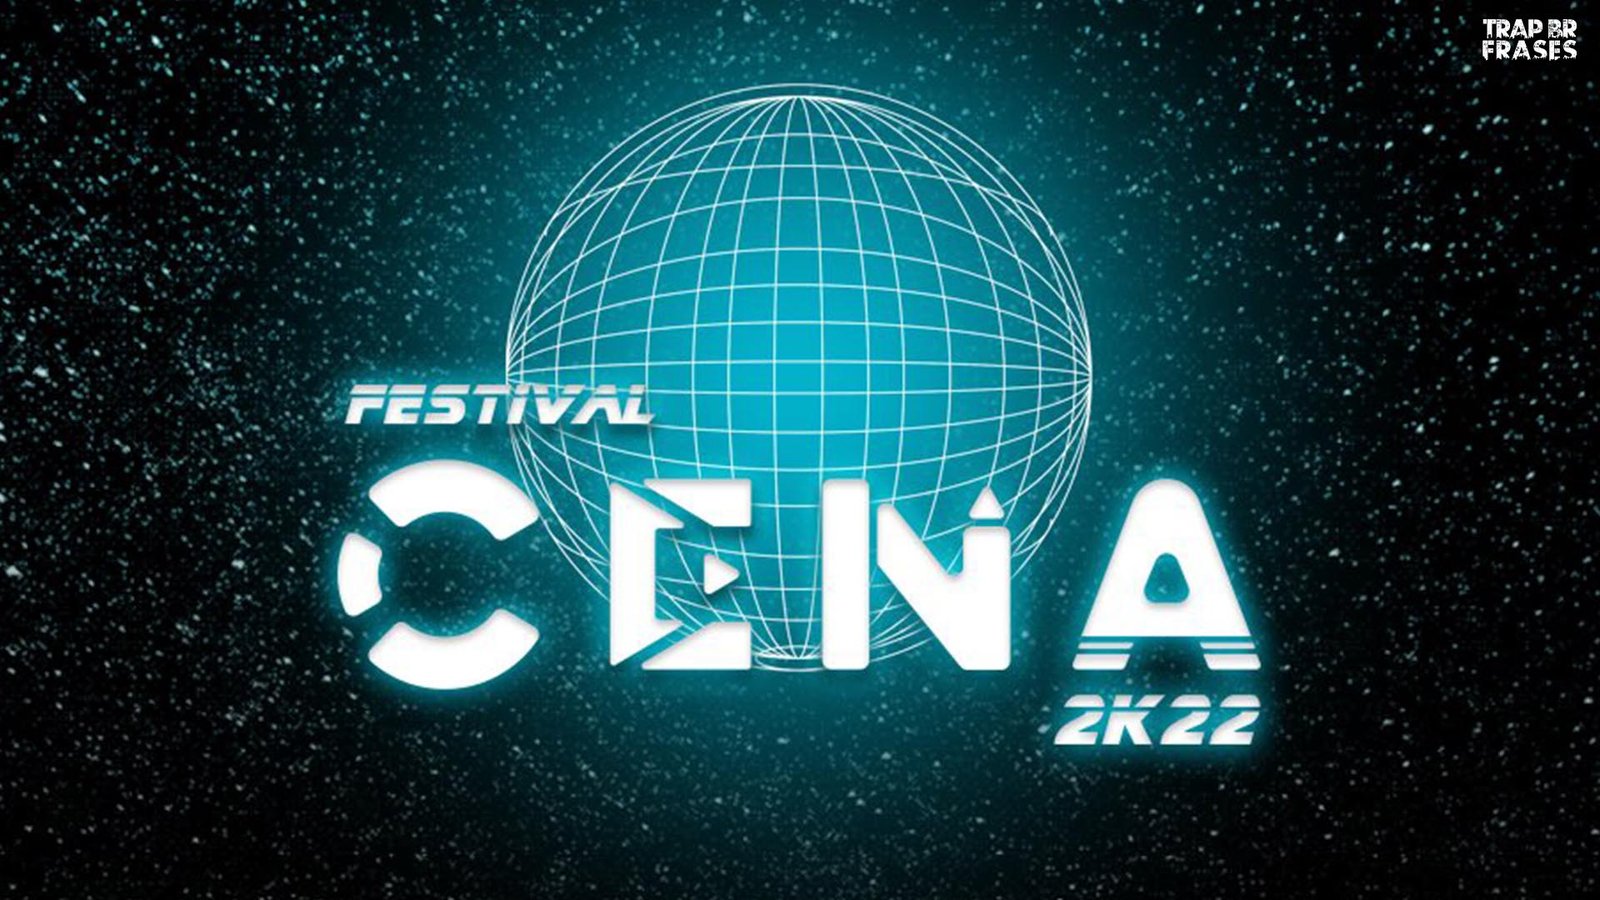 Festival CENA 2K22 divulga line up completo com mais de 120 atrações